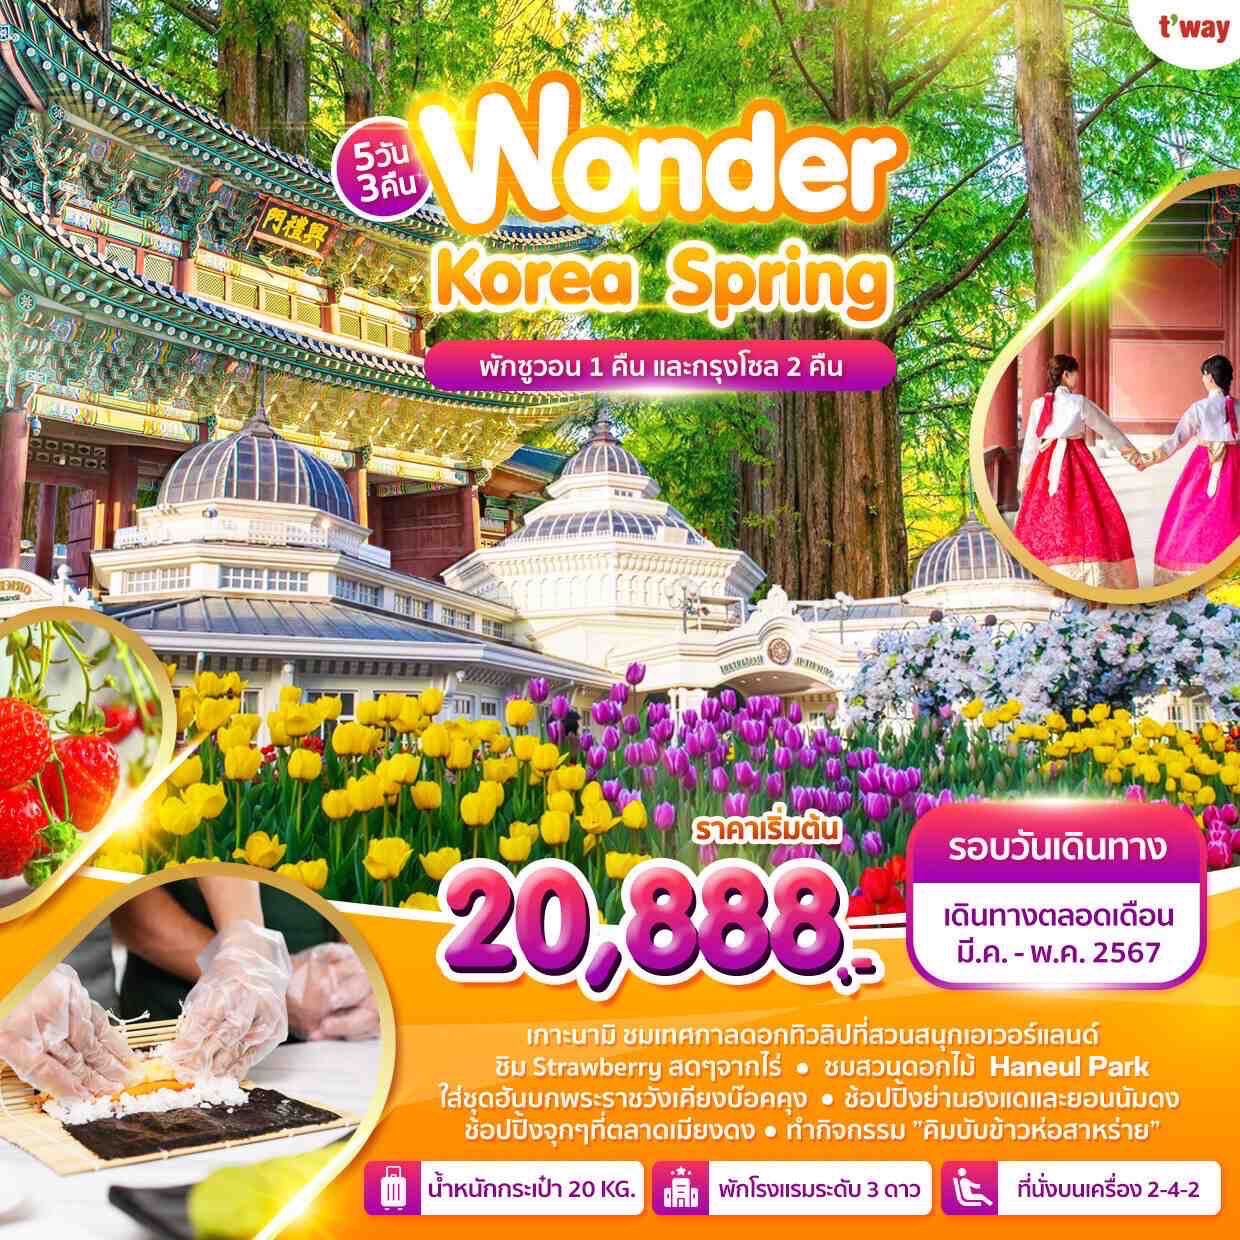 ทัวร์เกาหลี Wonder Korea Spring 5วัน 3คืน (TW)